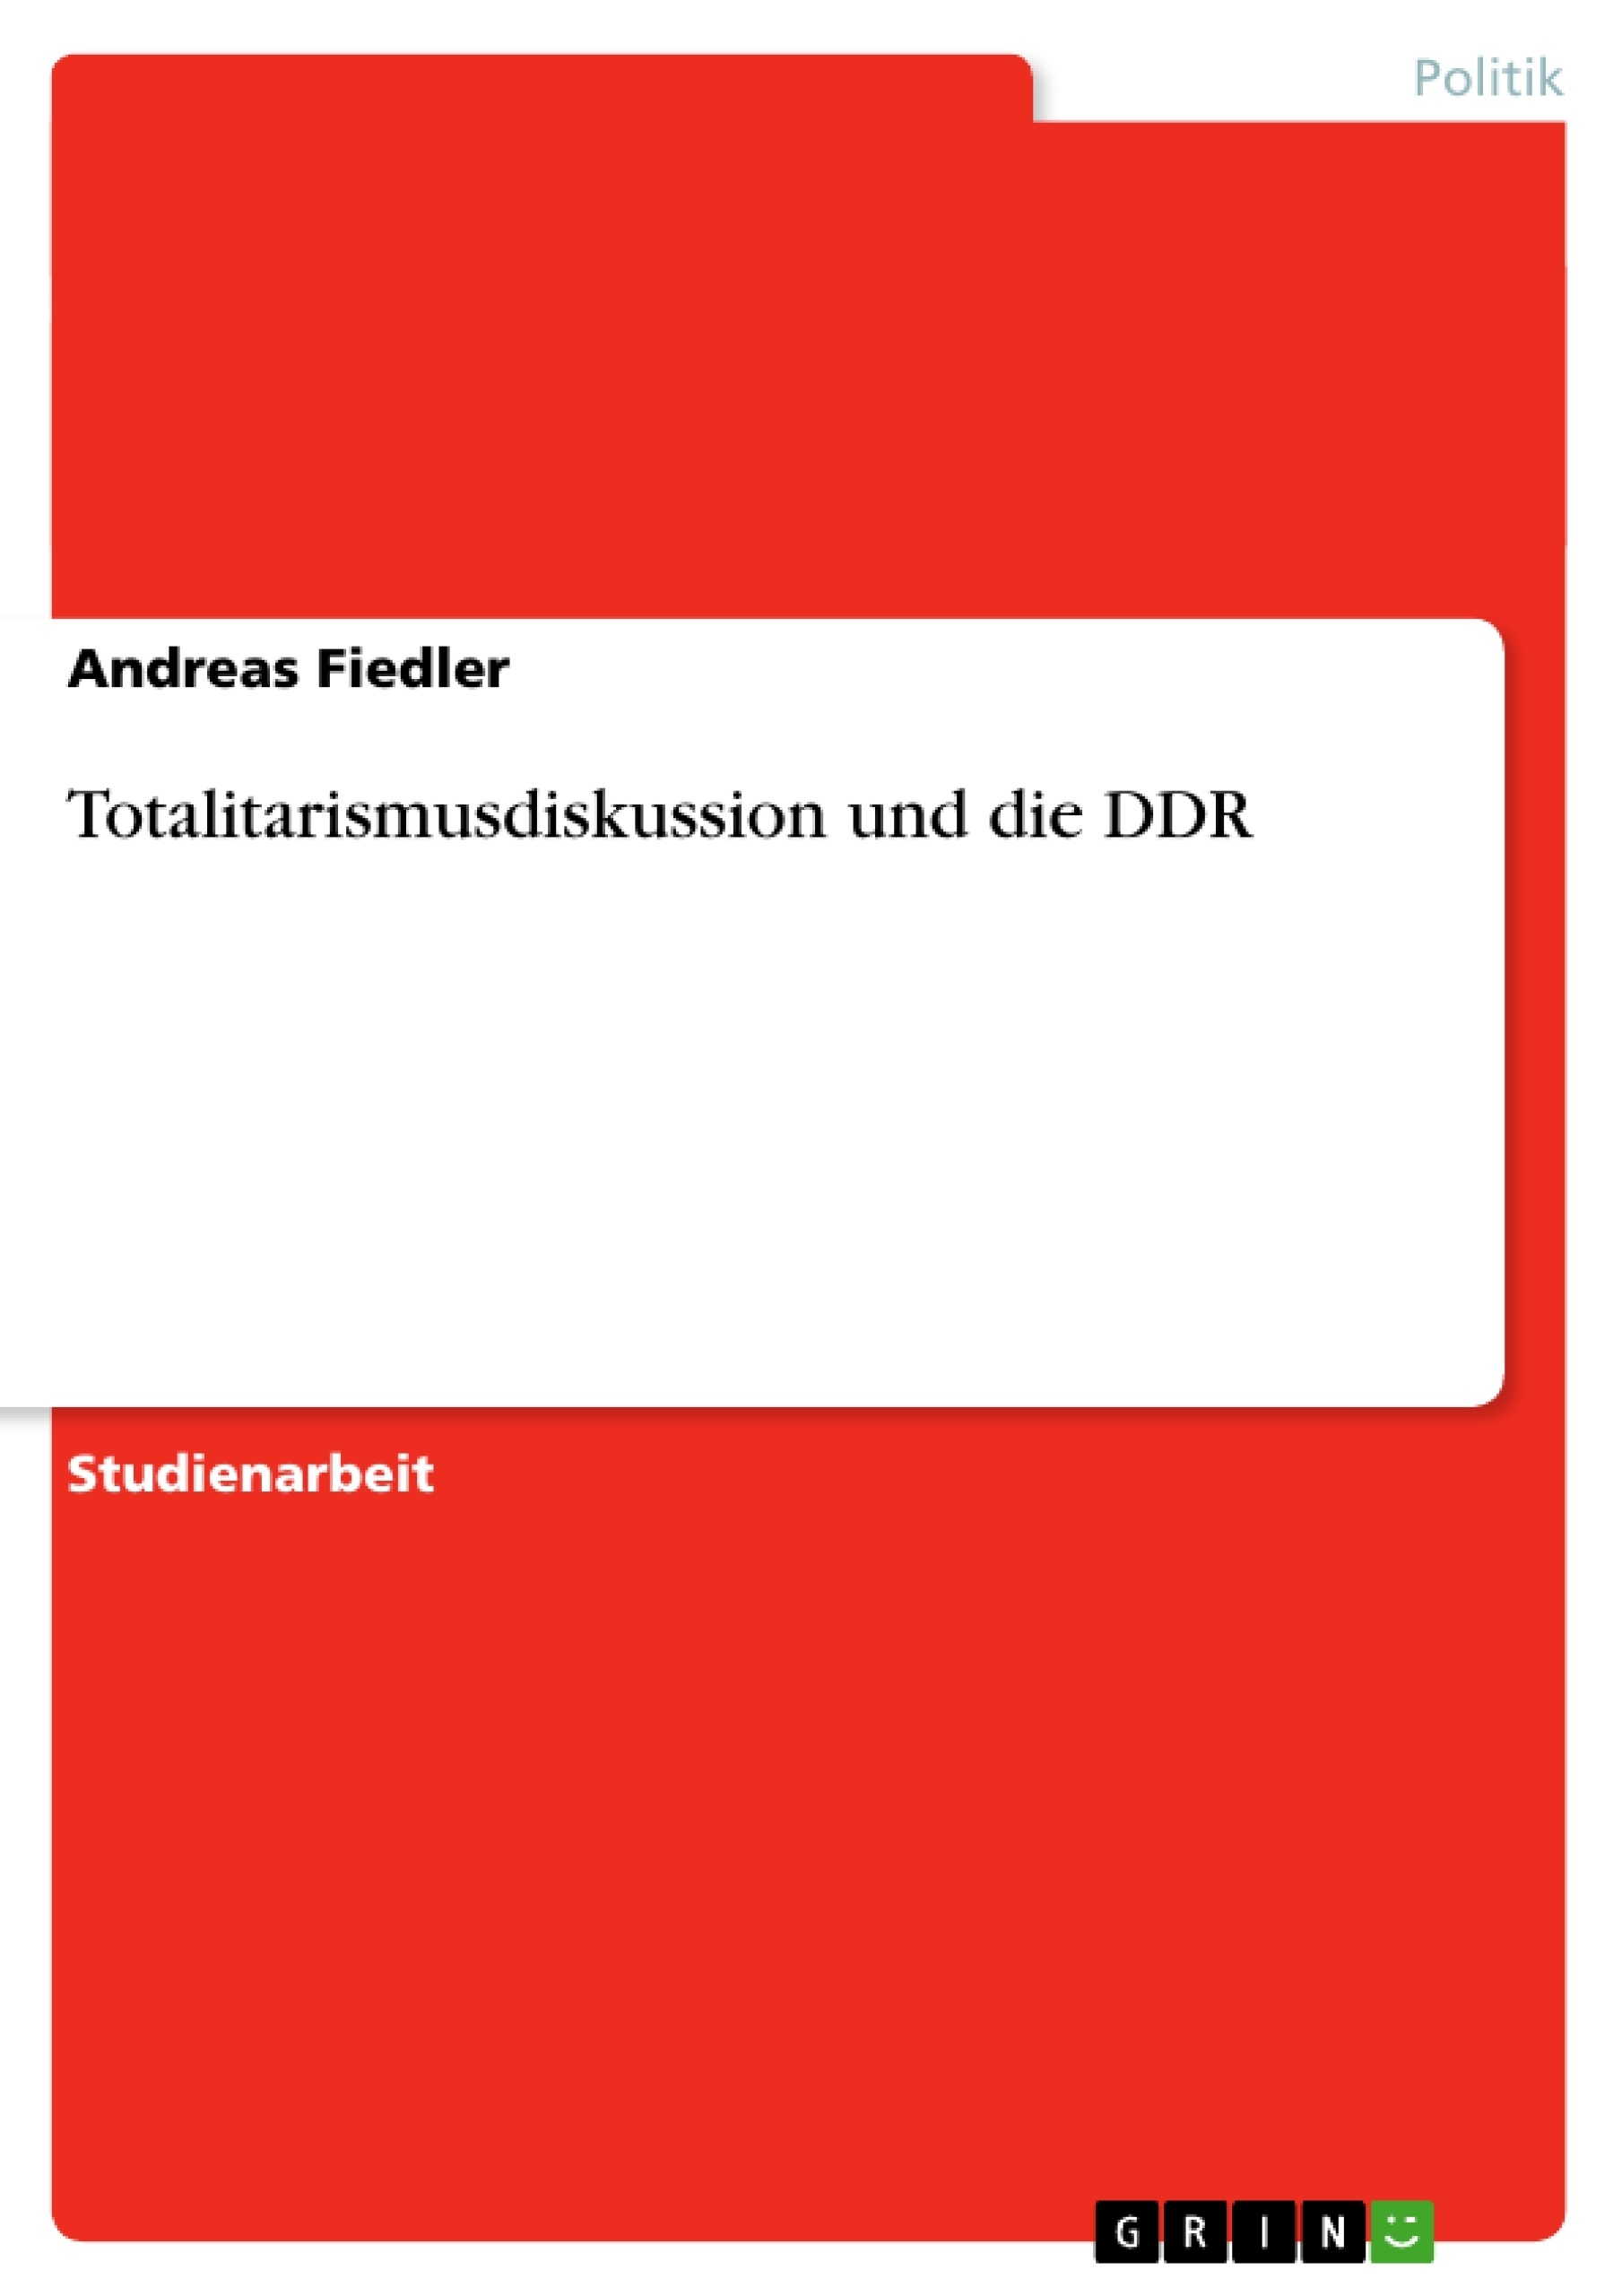 Title: Totalitarismusdiskussion und die DDR